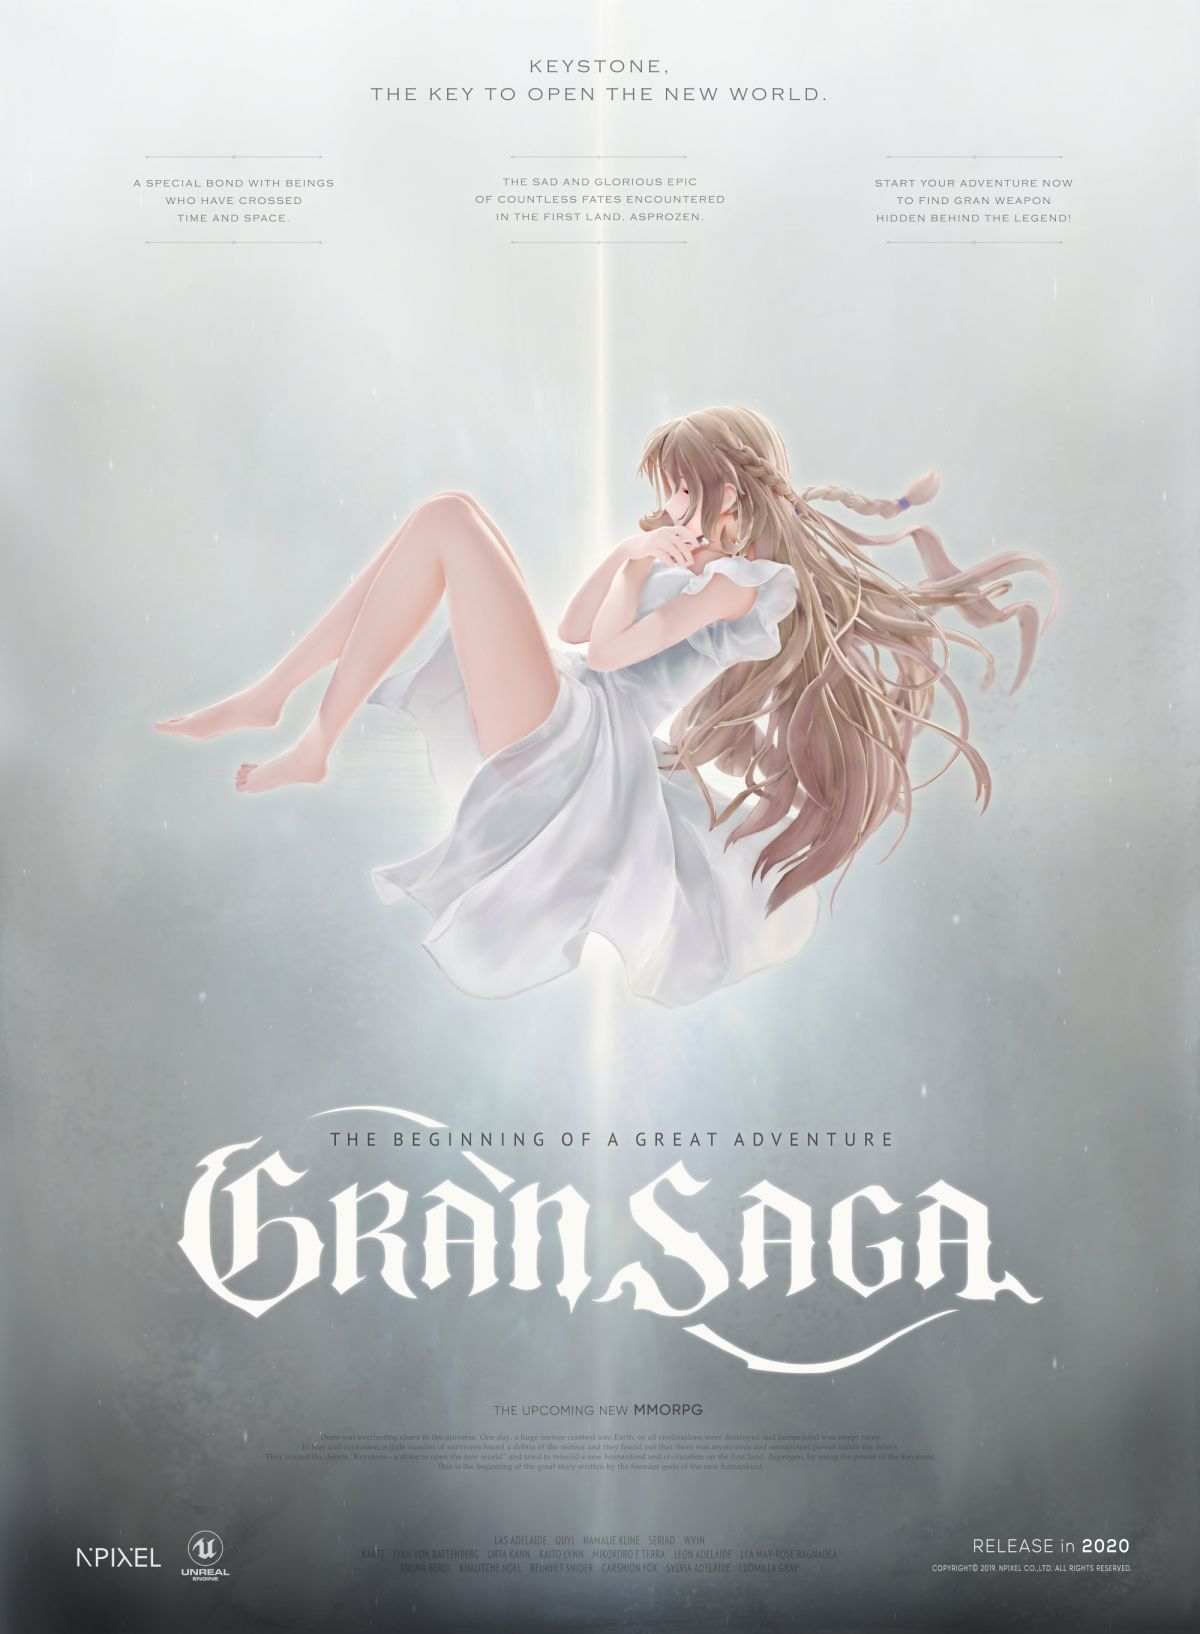 Gran Saga — новая кроссплатформенная MMORPG на движке Unreal Engine 4 от авторов Seven Knights 